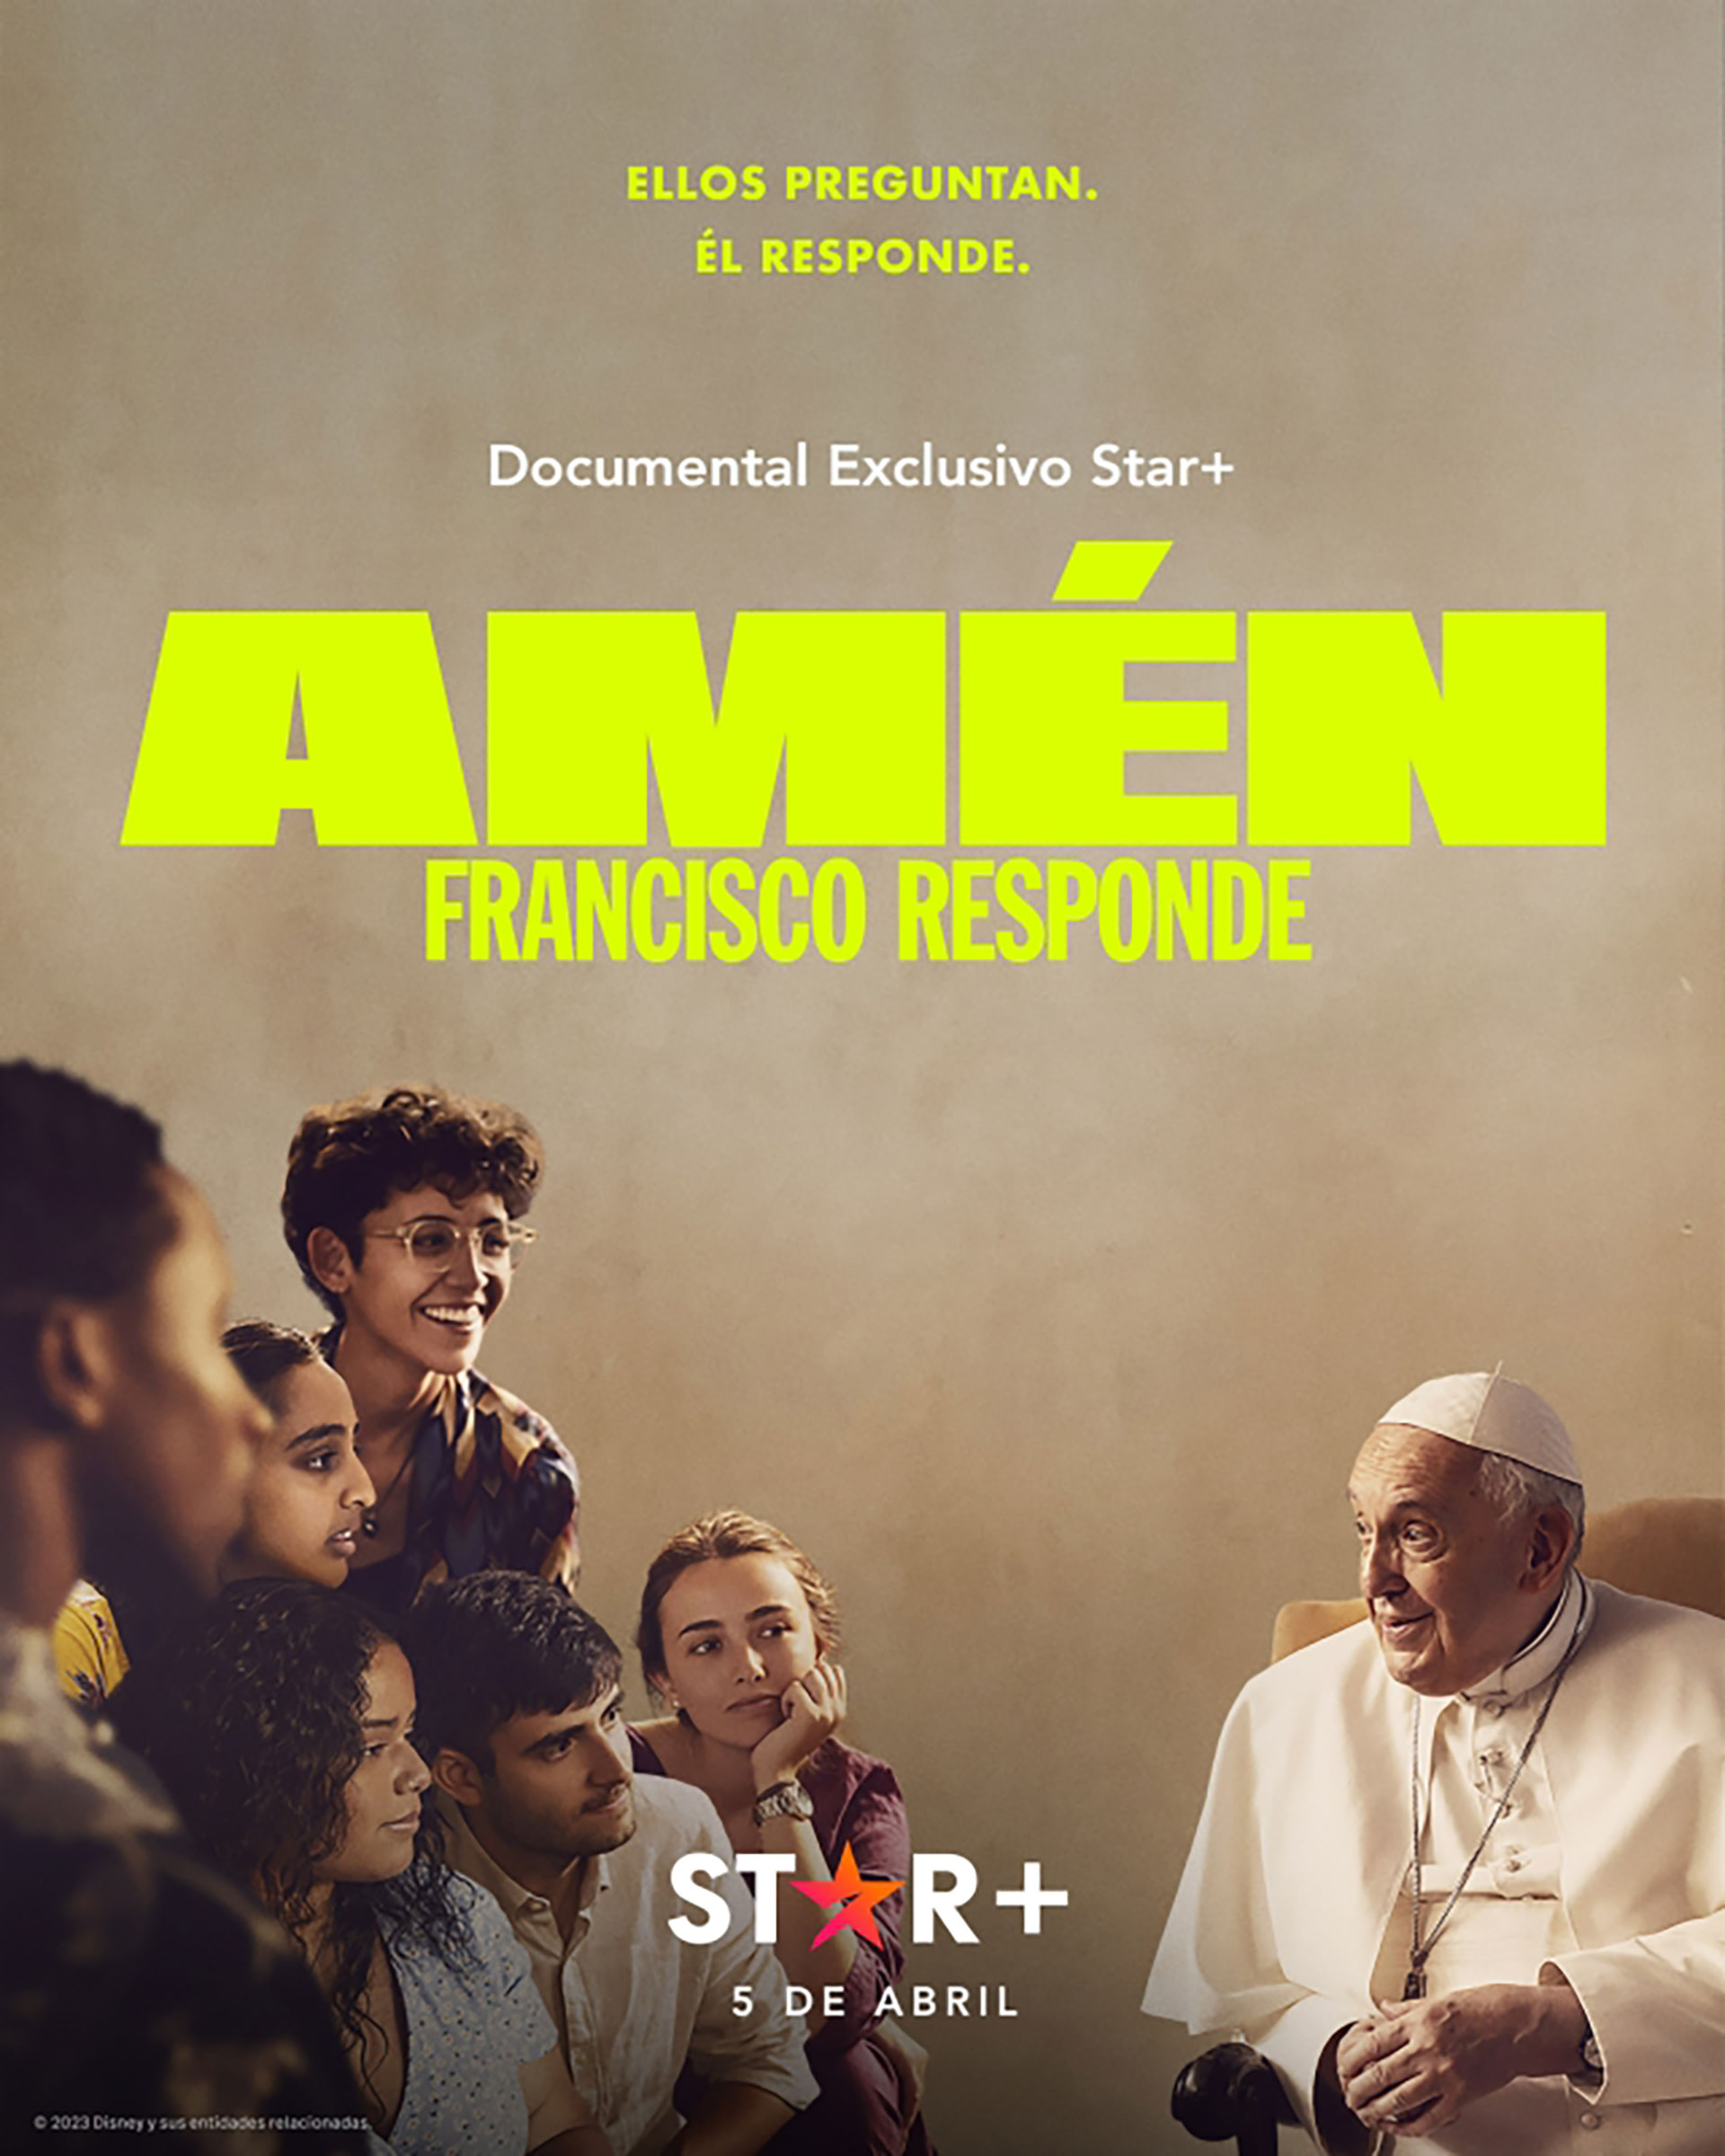 El afiche promocional del programa que tiene como protagonista al Papa